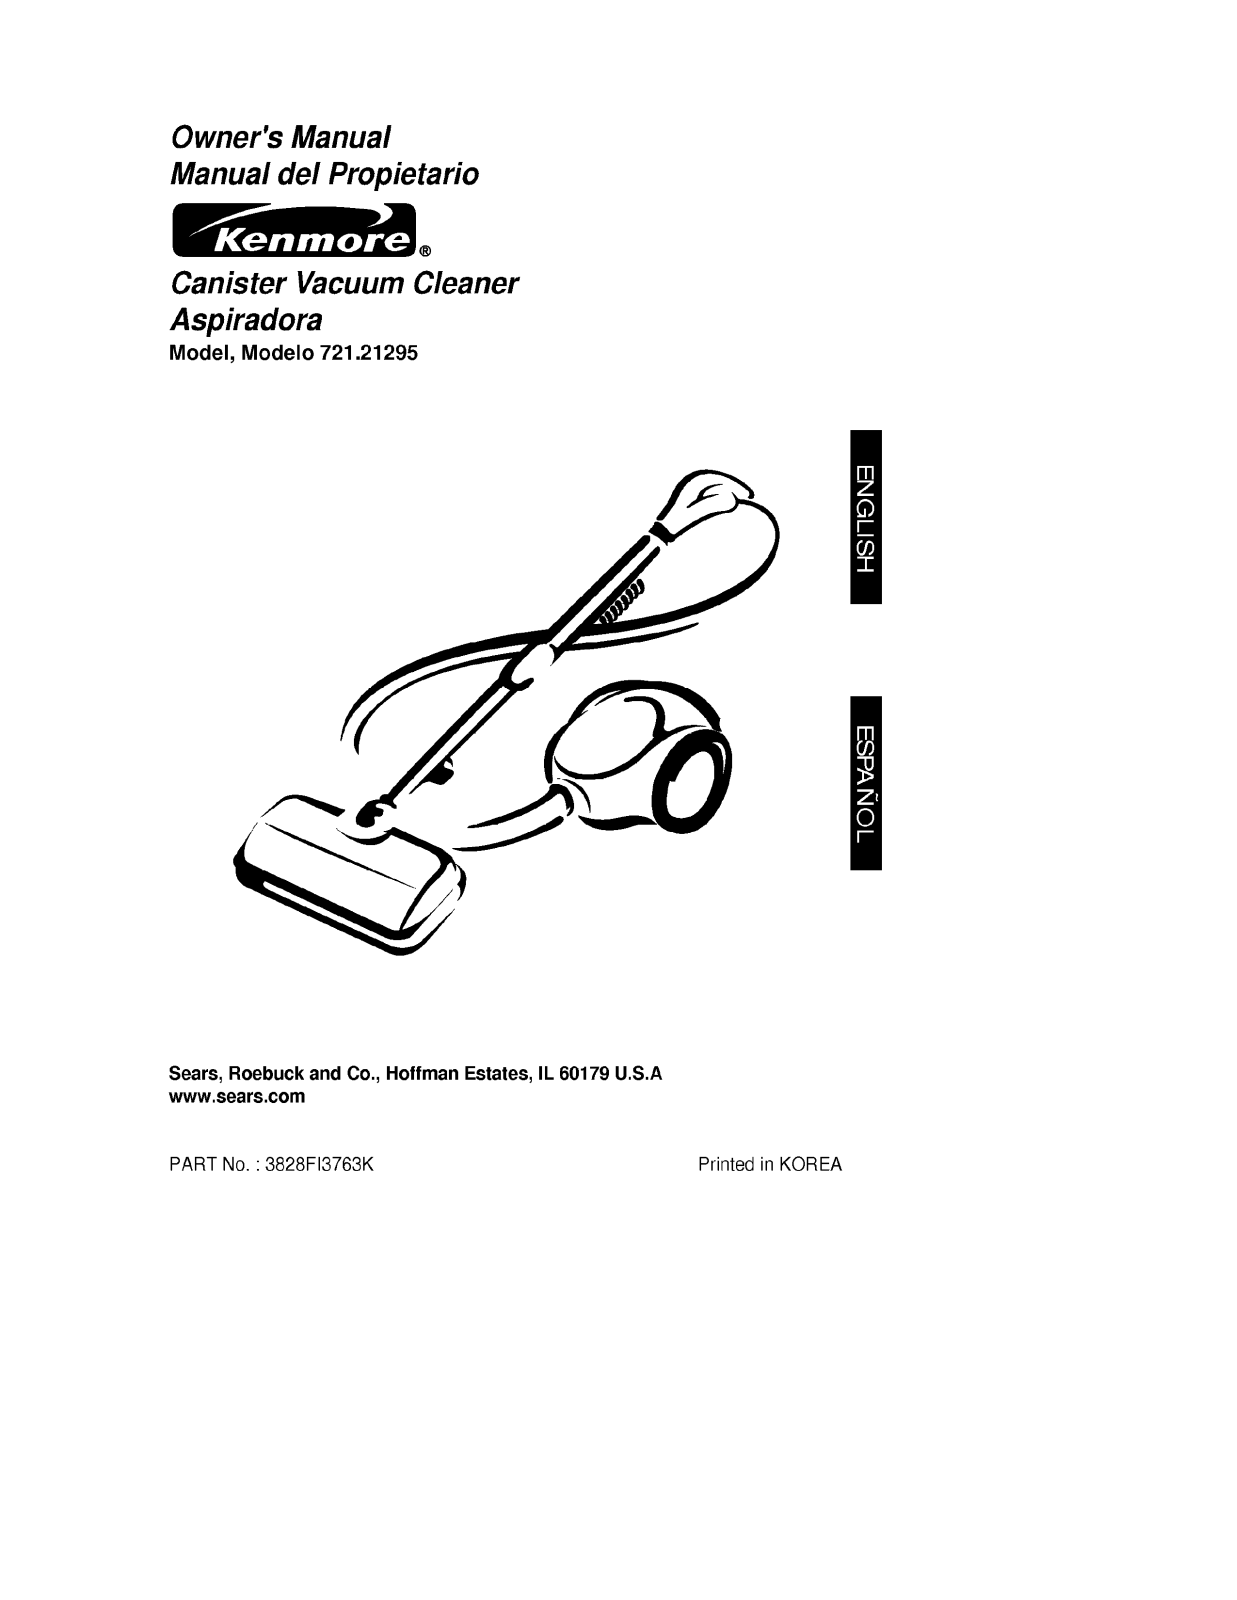 Lg 21295 Owner's Manual